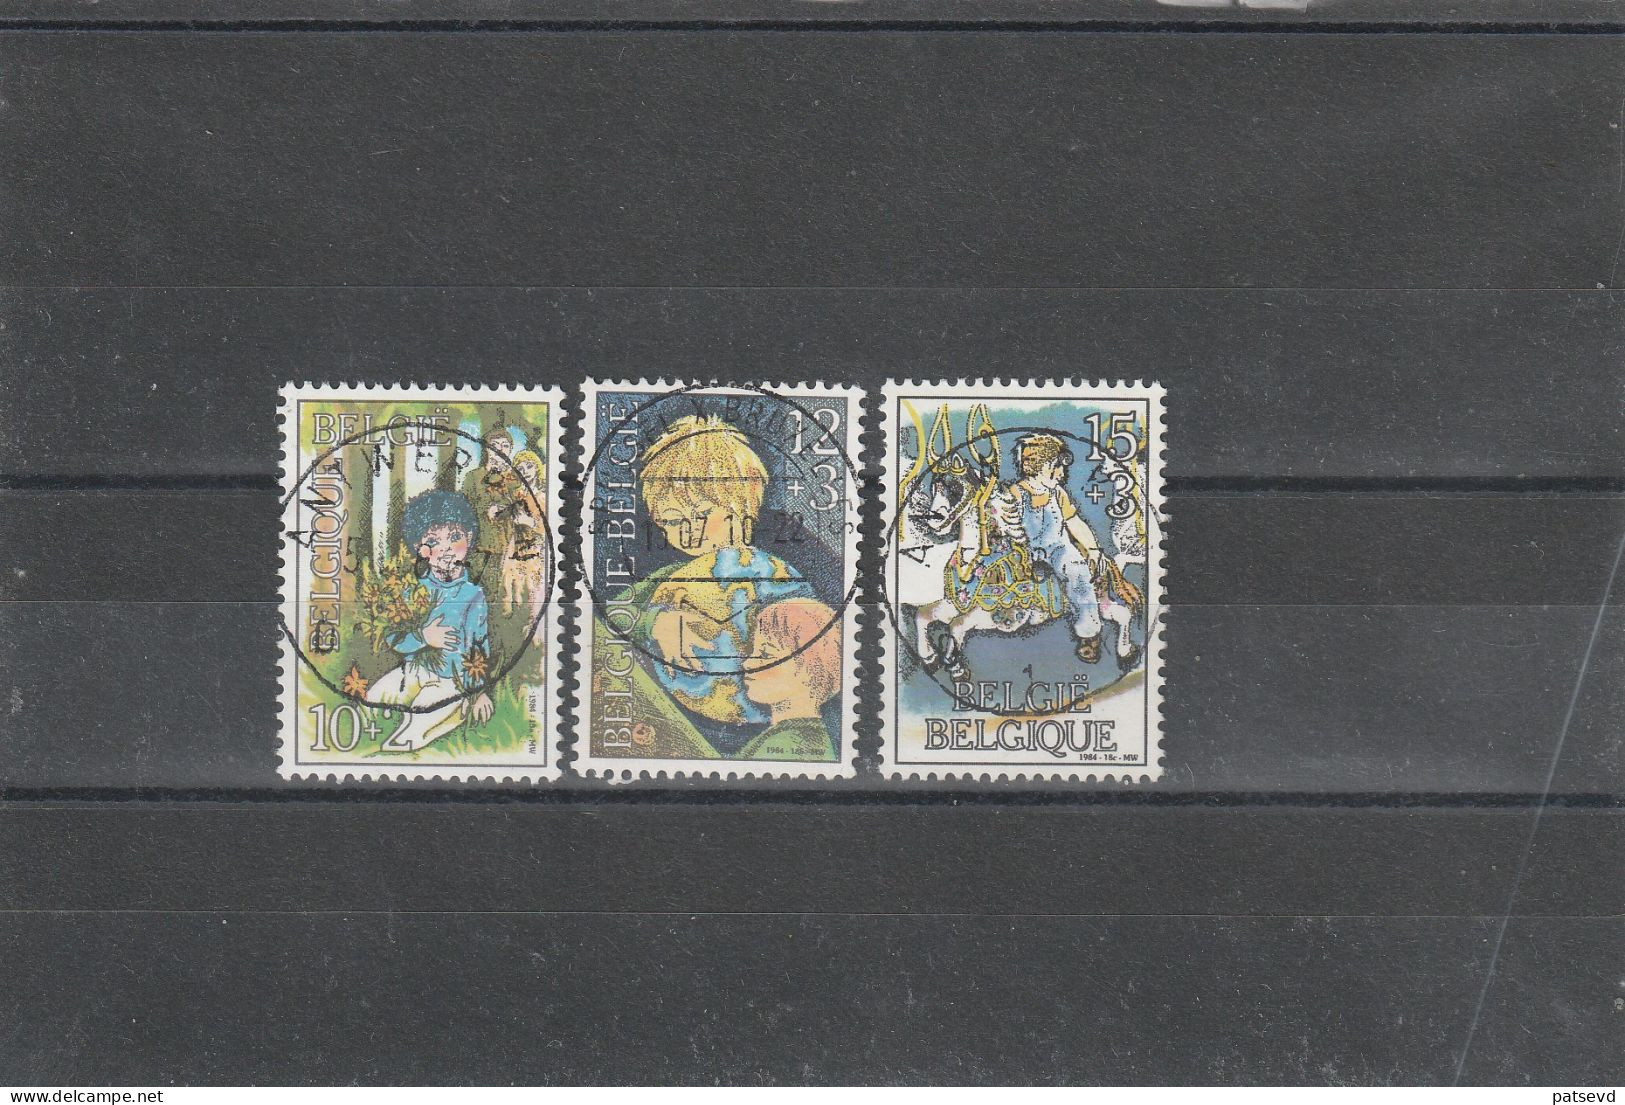 2151/2153 Enfants/kinderen , Oblit/gestp Centrale - Used Stamps